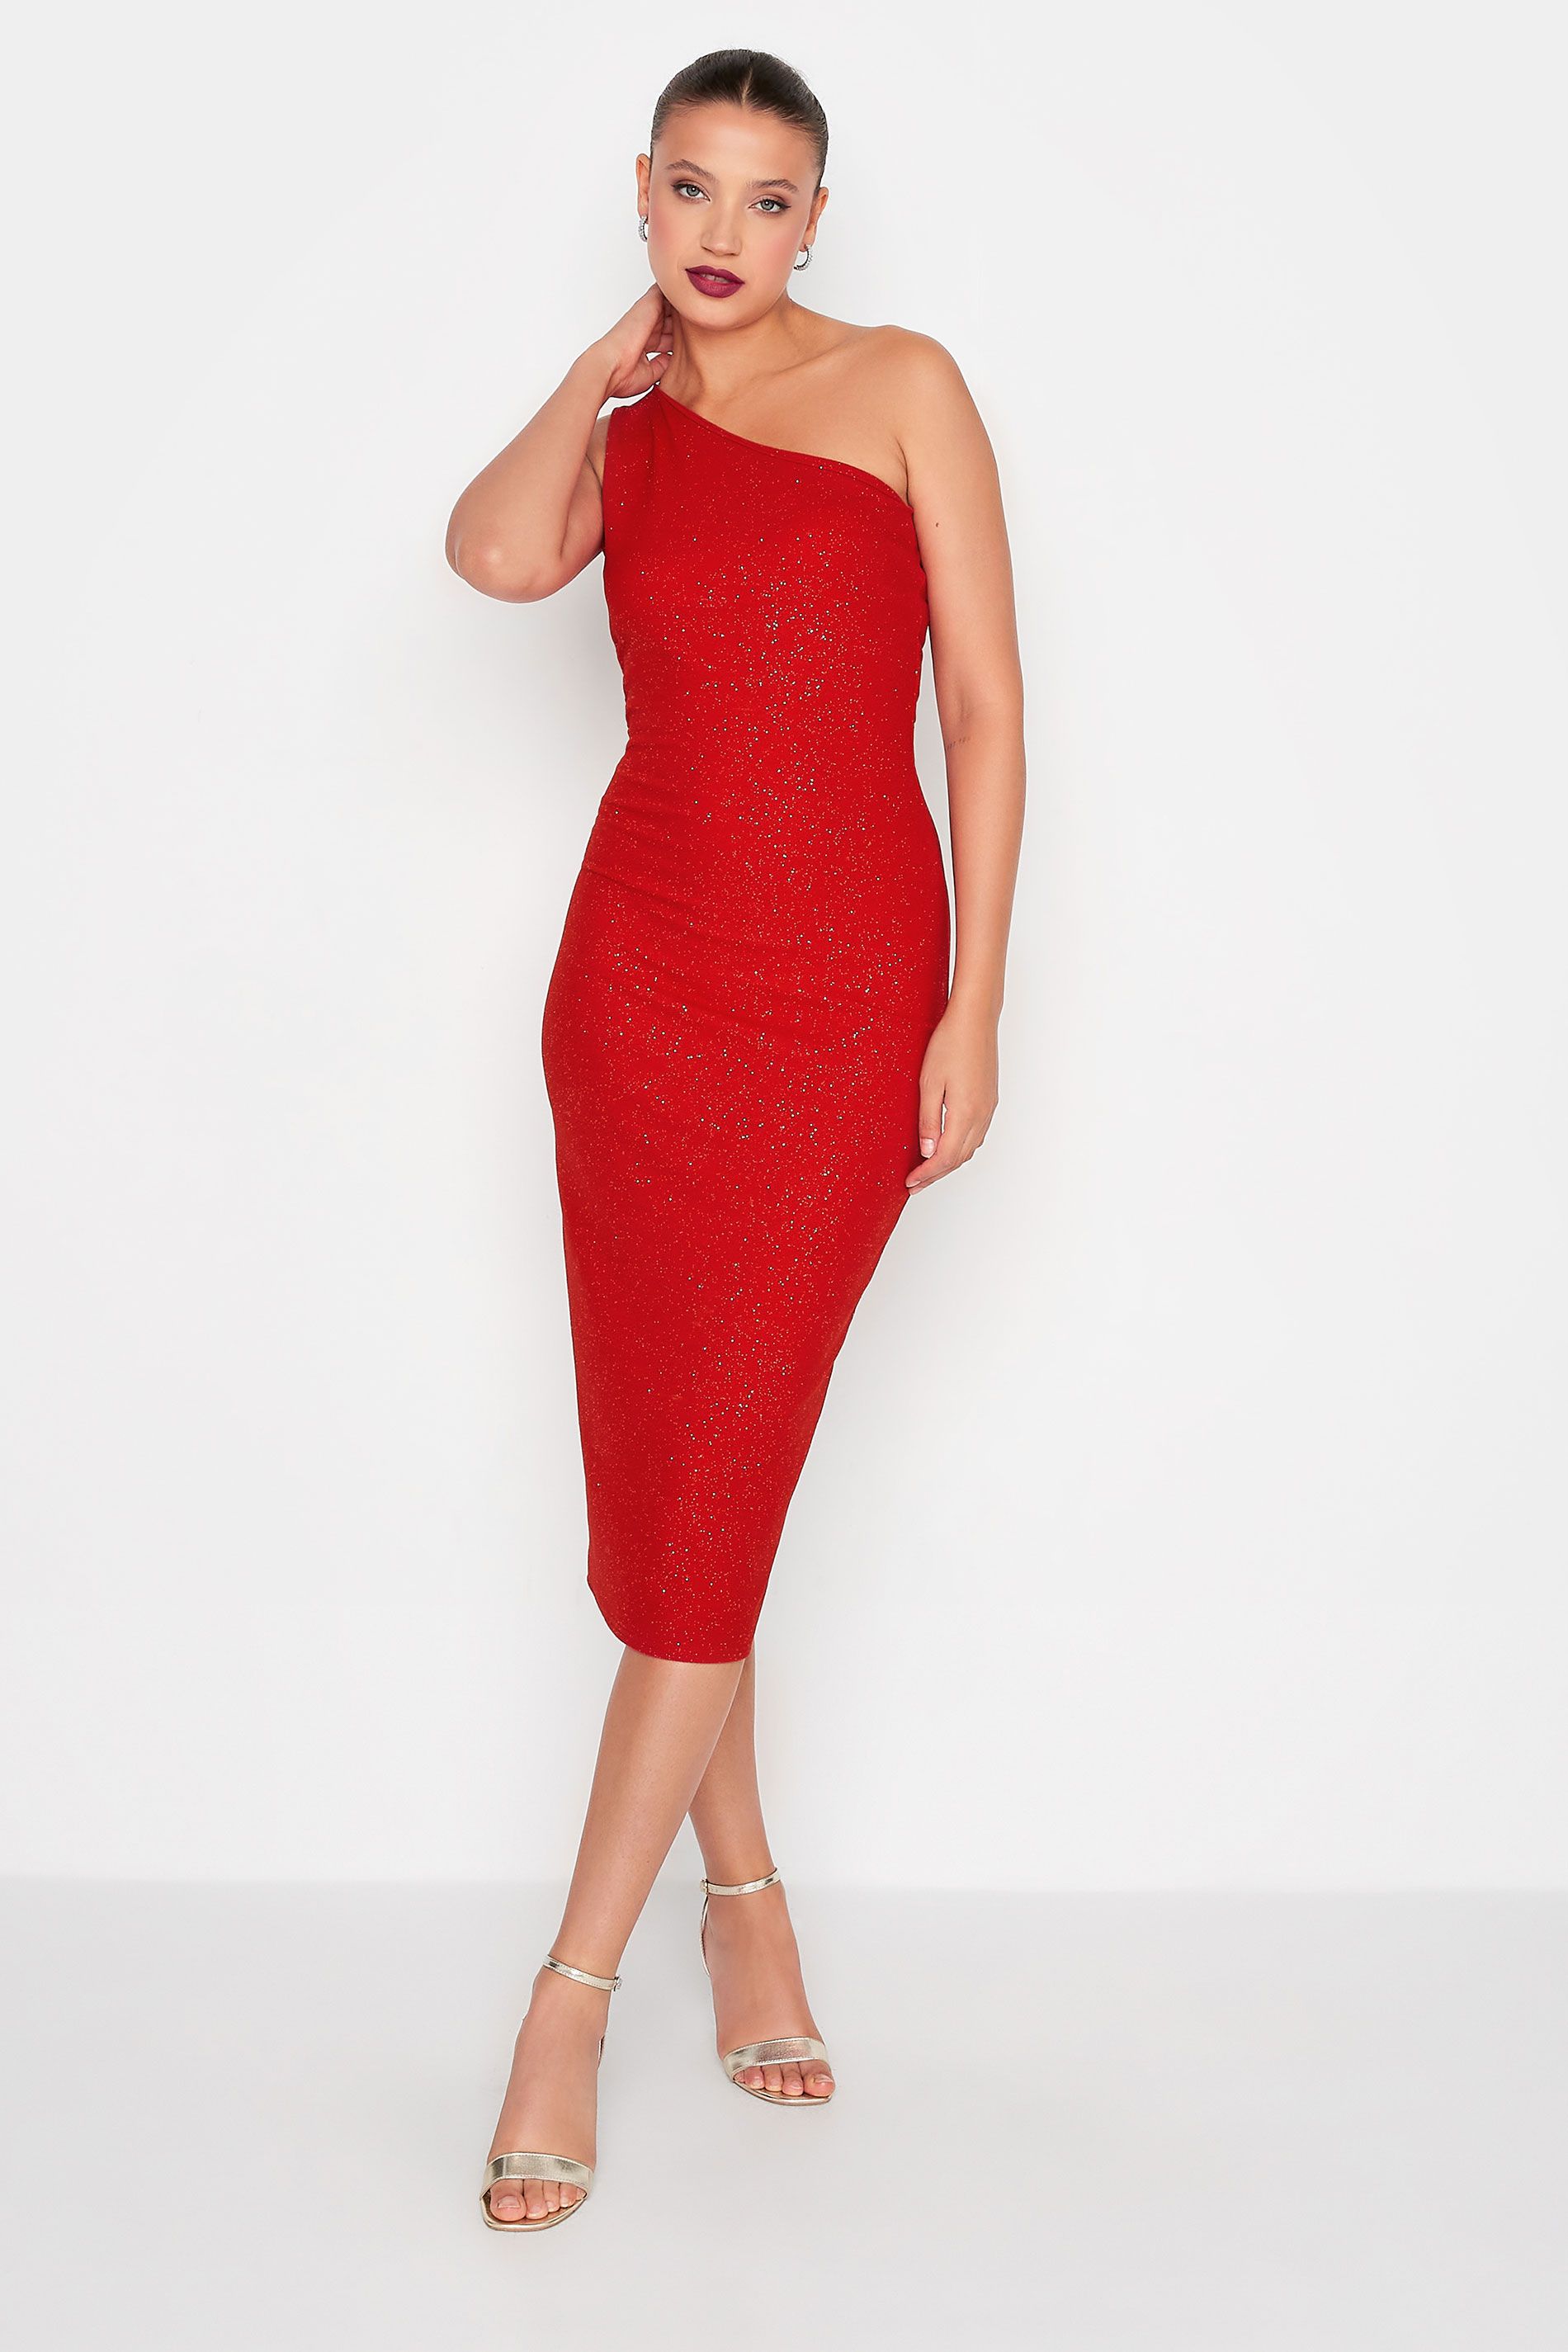 LTS Tall Red Glitter One Shoulder Midi Dress | Long Tall Sally